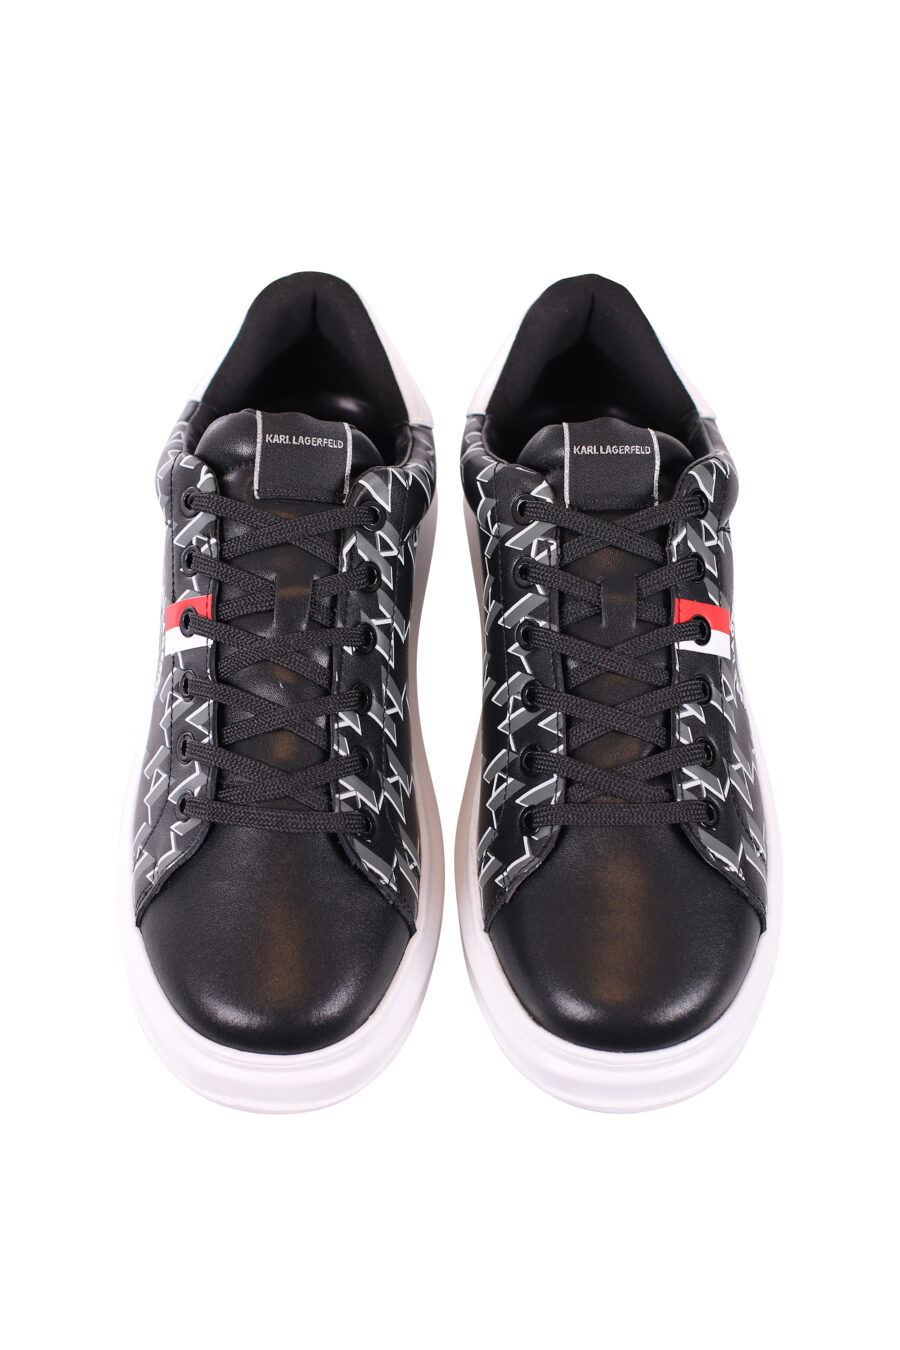 Zapatillas negras con monograma y lineas rojas y blancas - IMG 5657